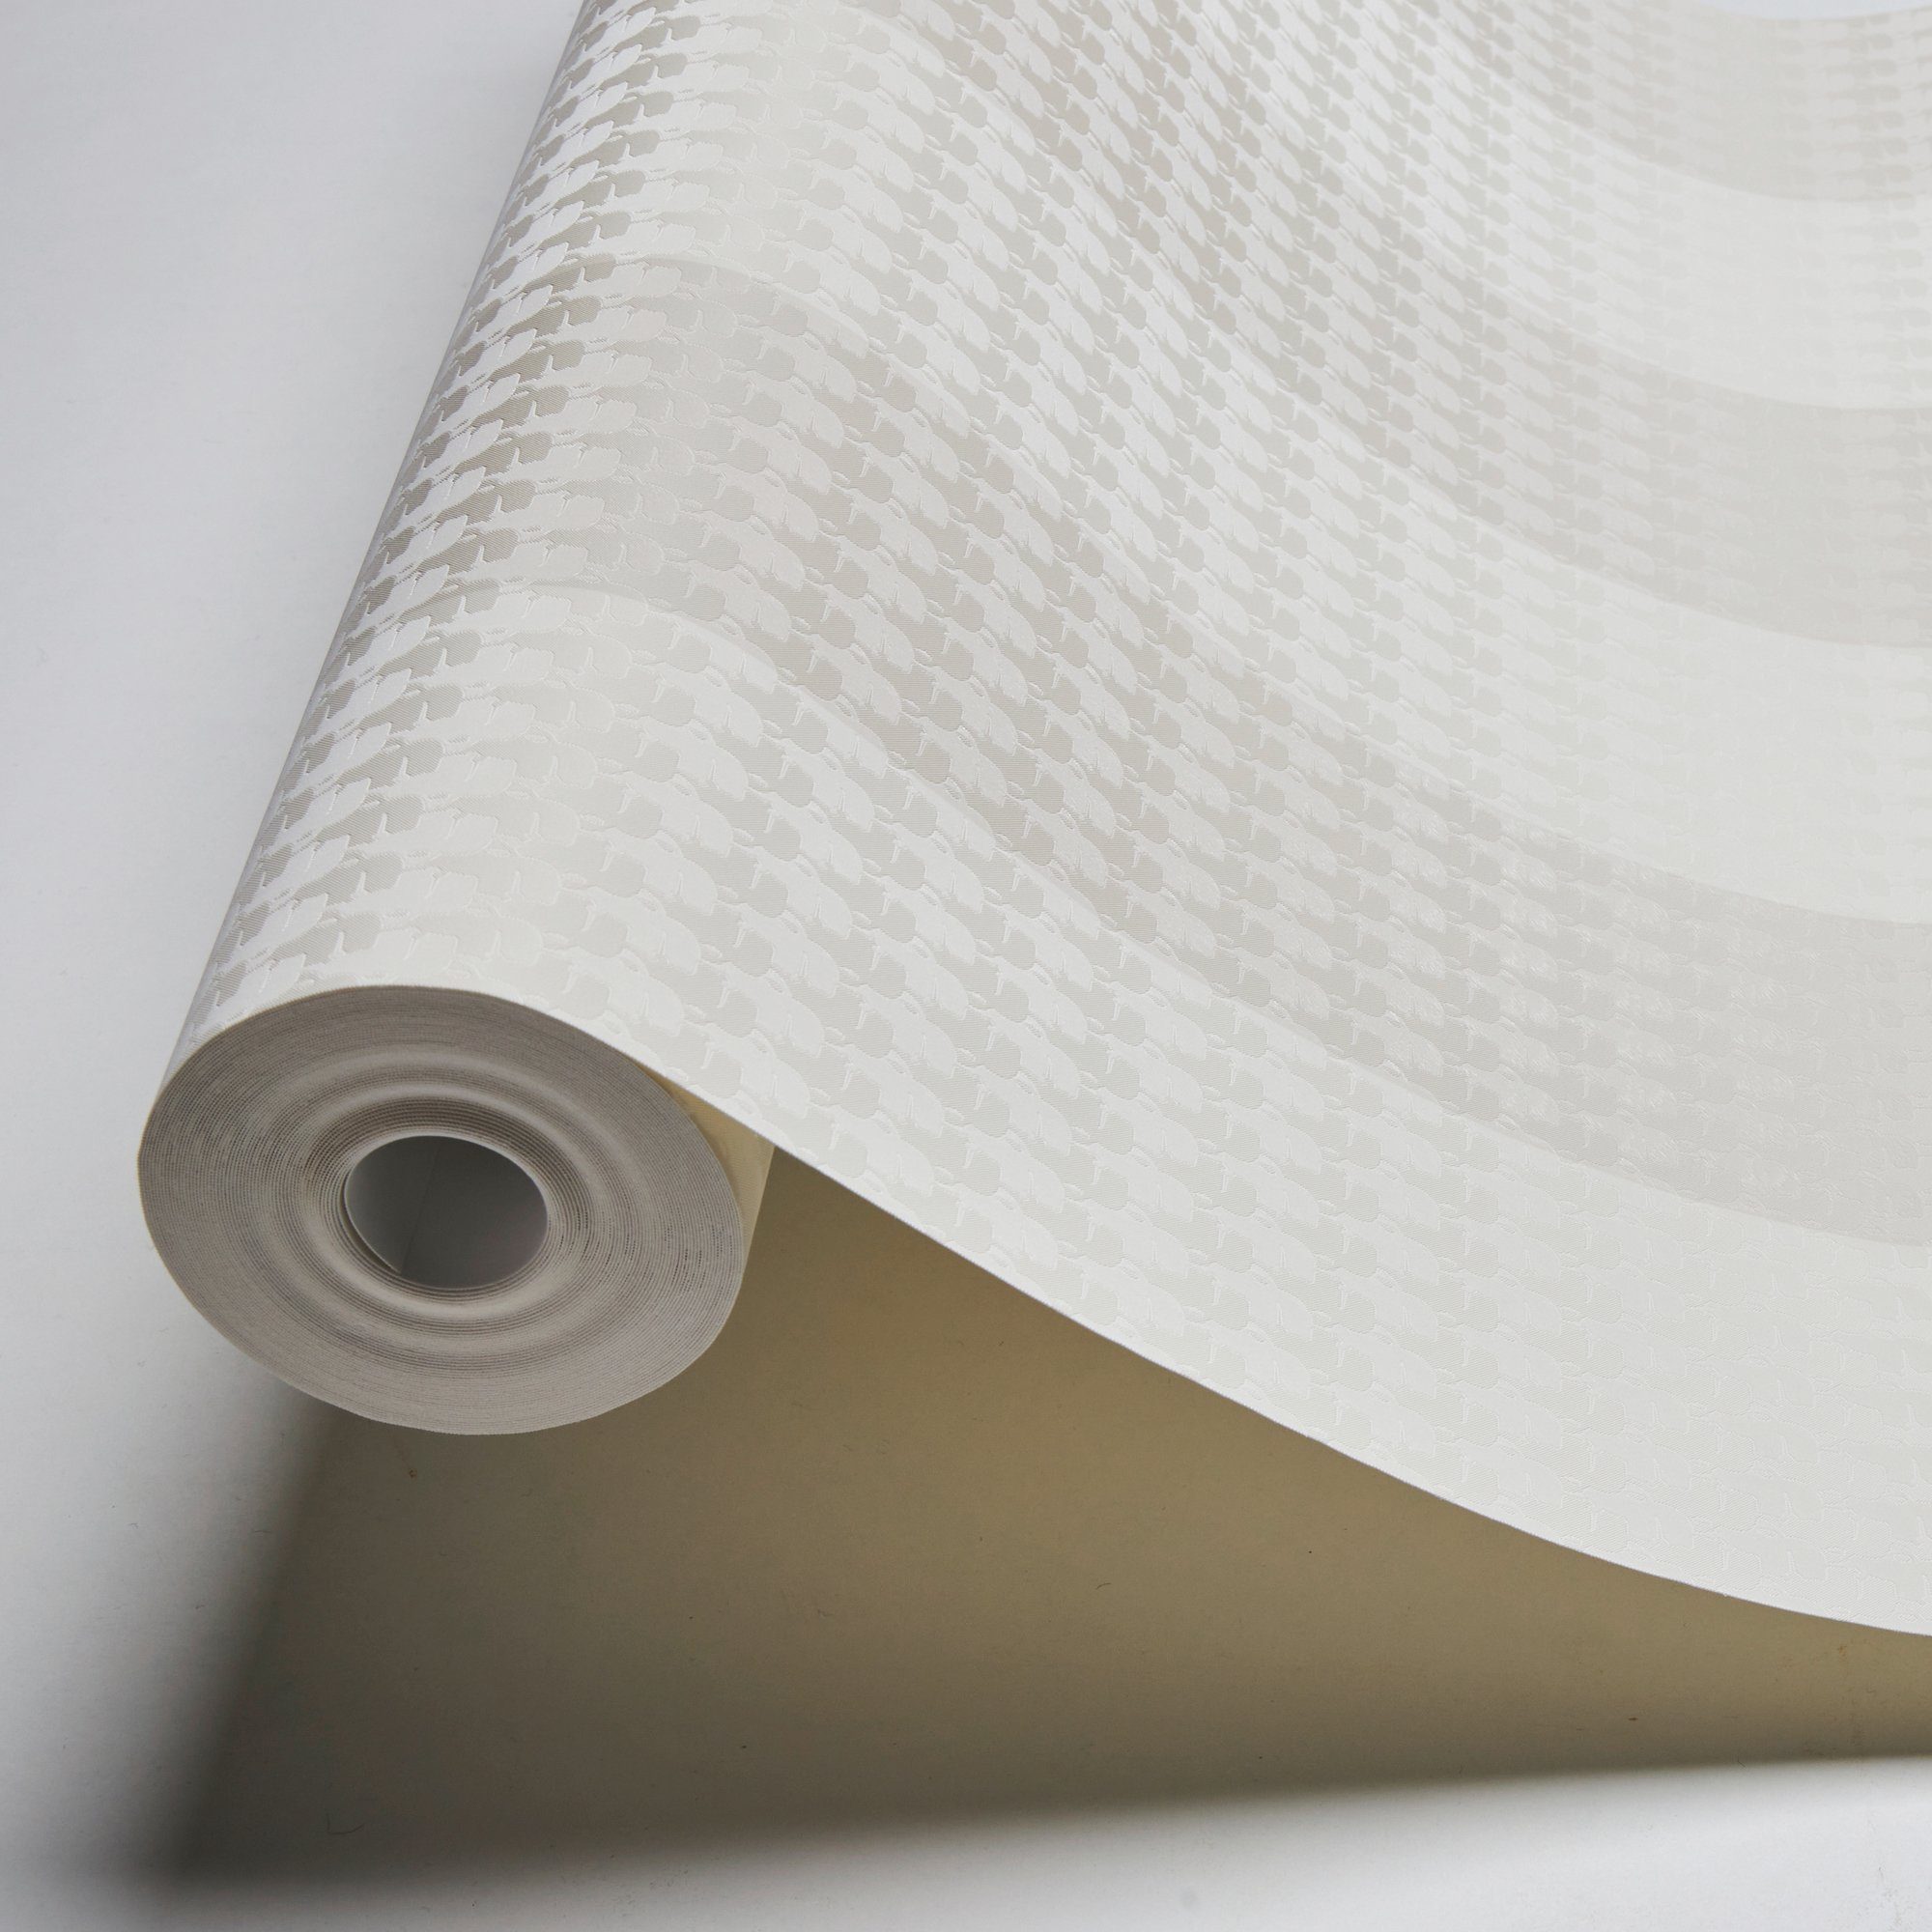 Lagerfeld Paper gestreift, Streifen, Stripes, Architects Designer Streifentapete beige/creme/weiß Vliestapete Tapete Karl